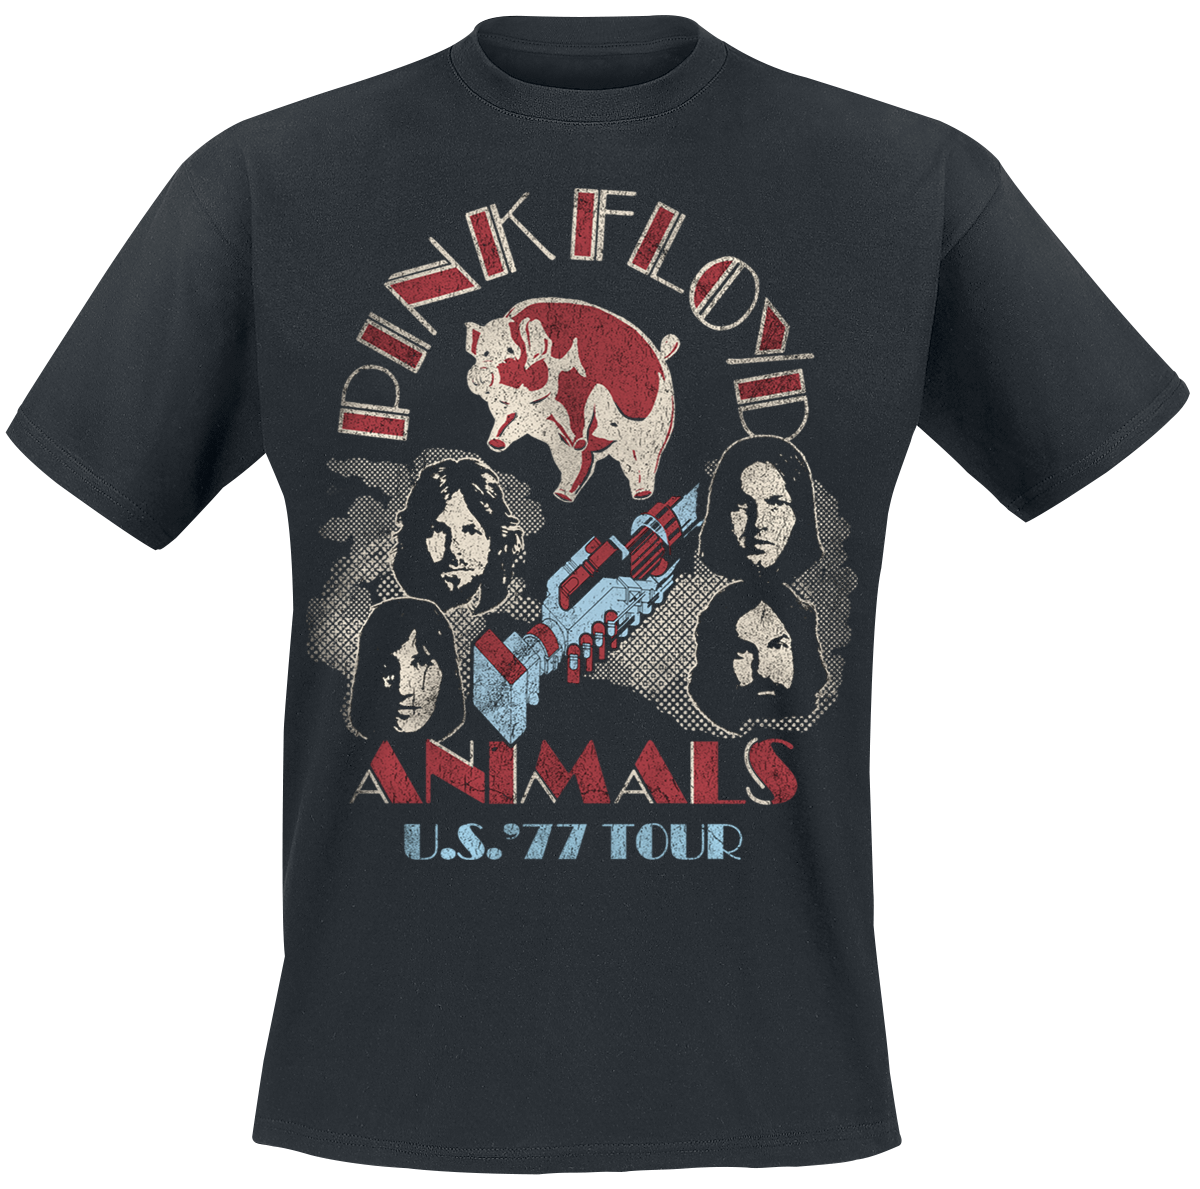 Pink Floyd - Animals US Tour 1977 - T-Shirt - black image